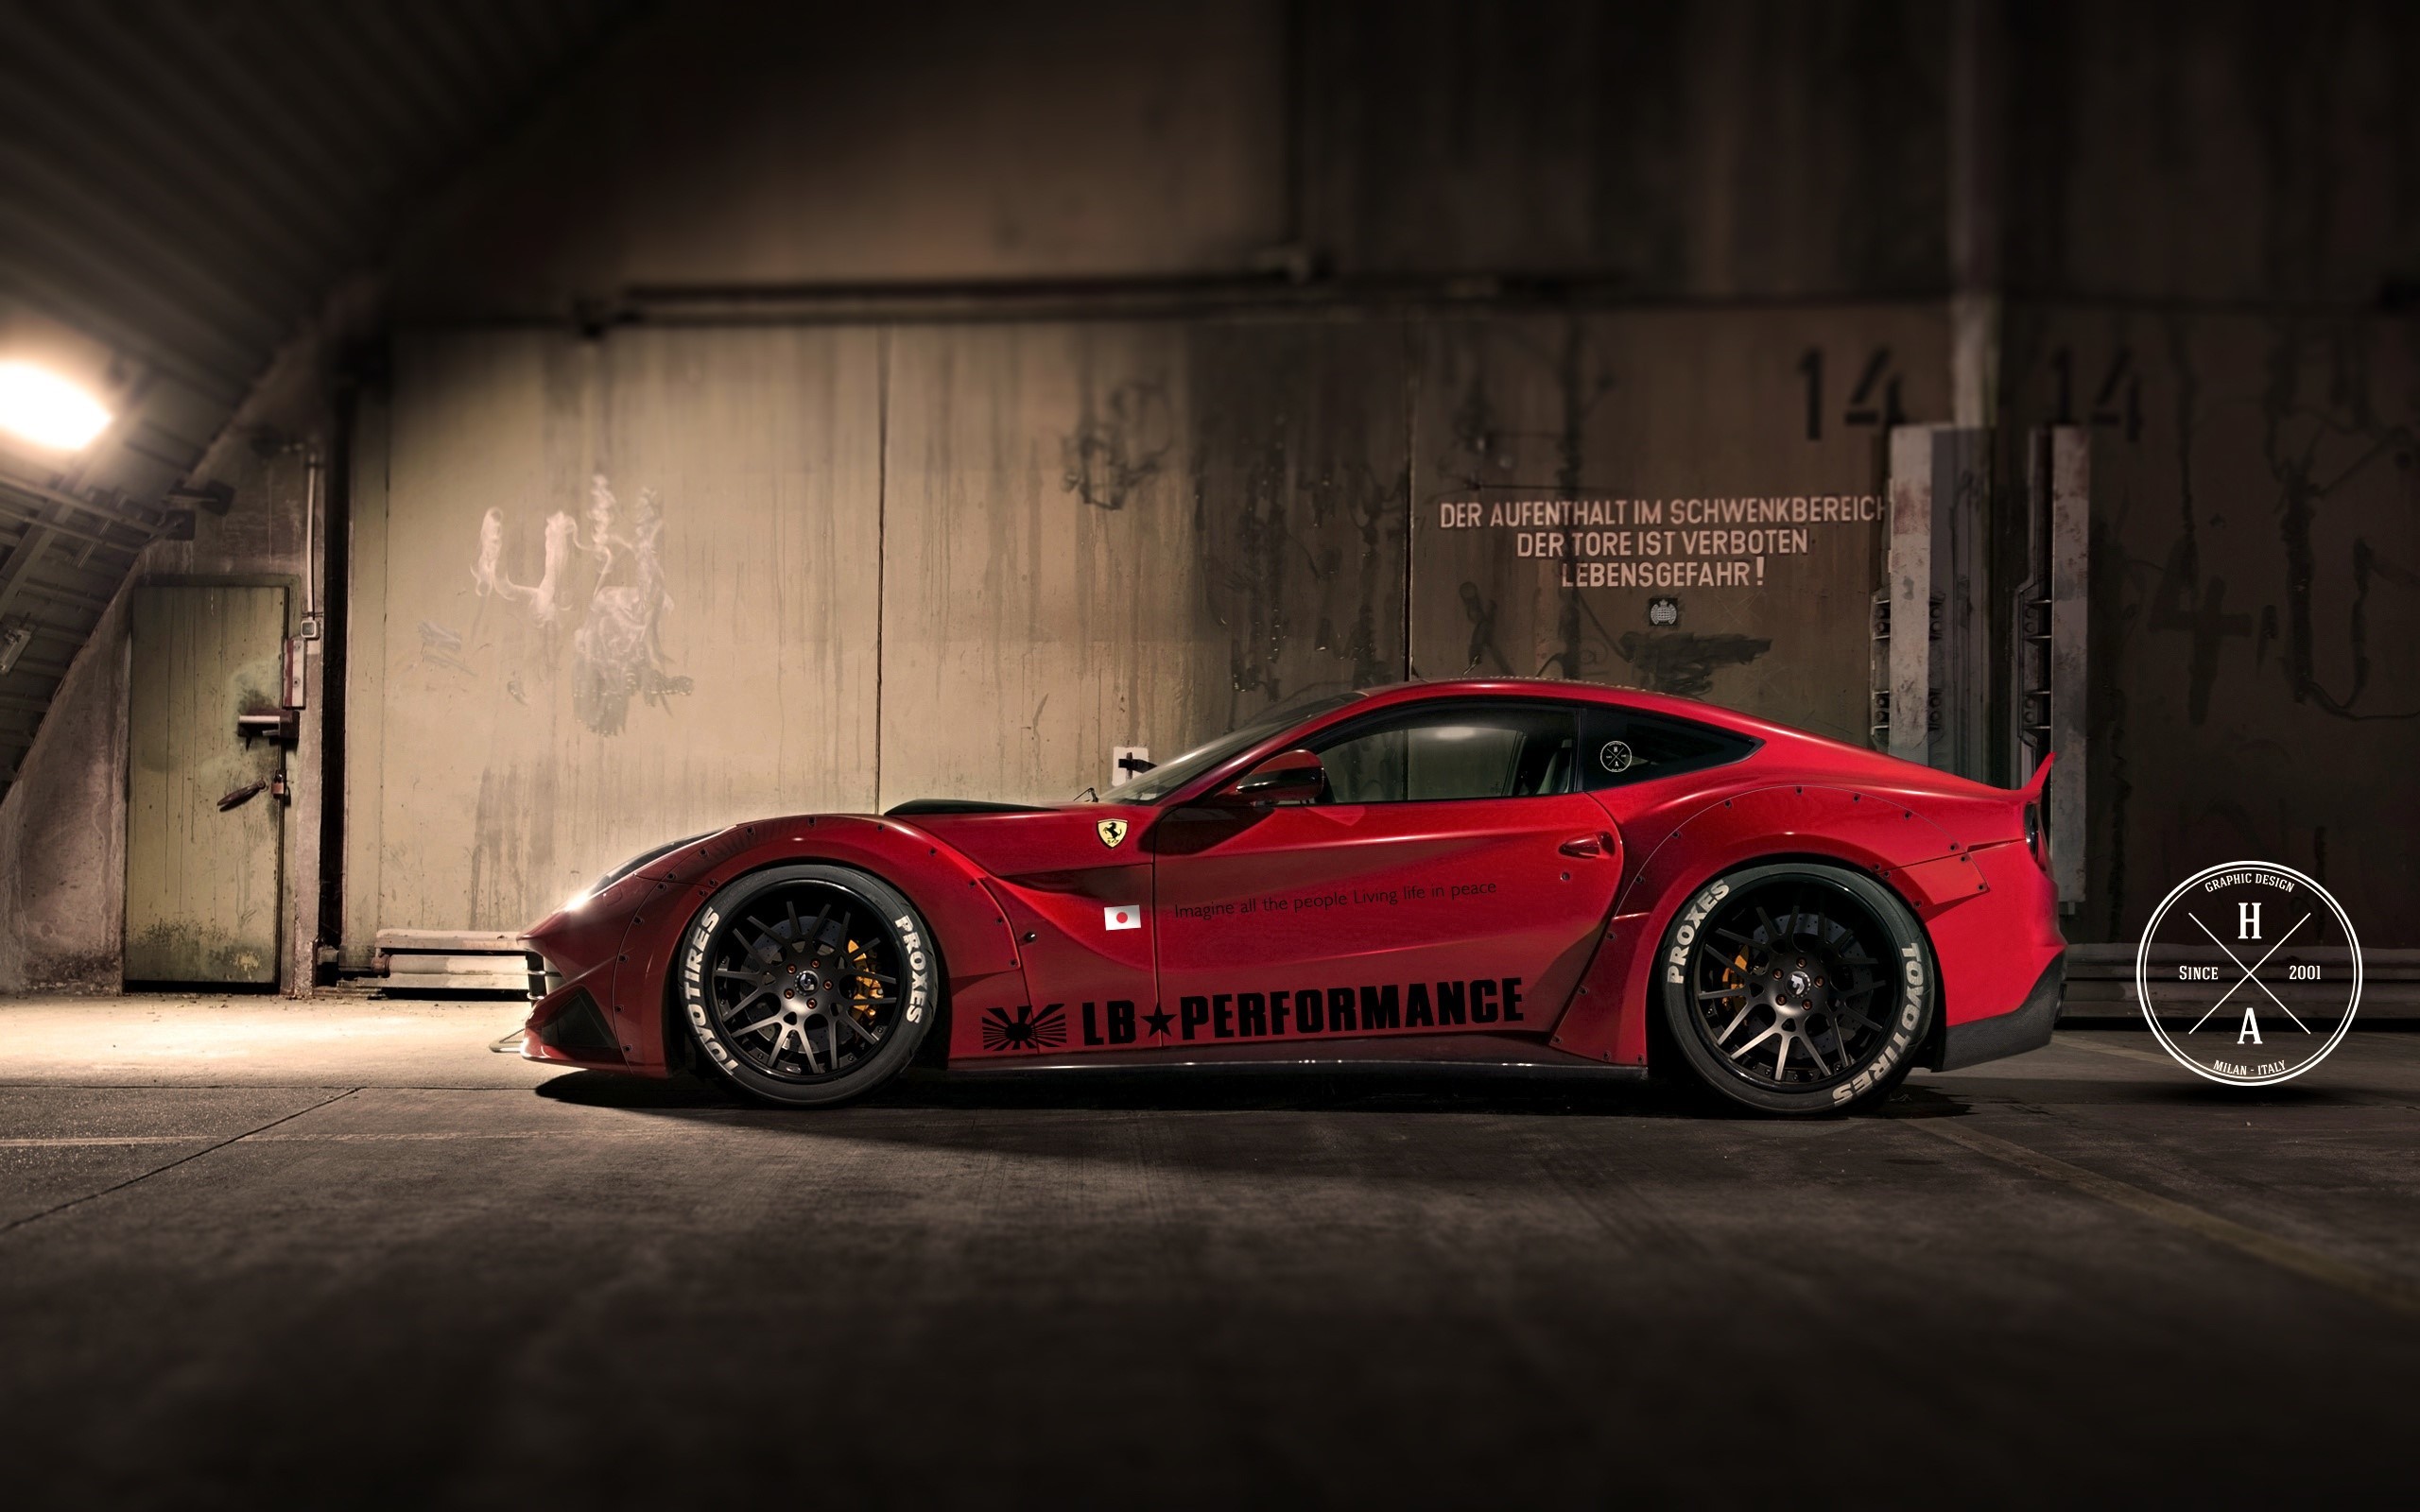 2560x1600 Wallpaper LB performance Ferrari 458 Italia Images